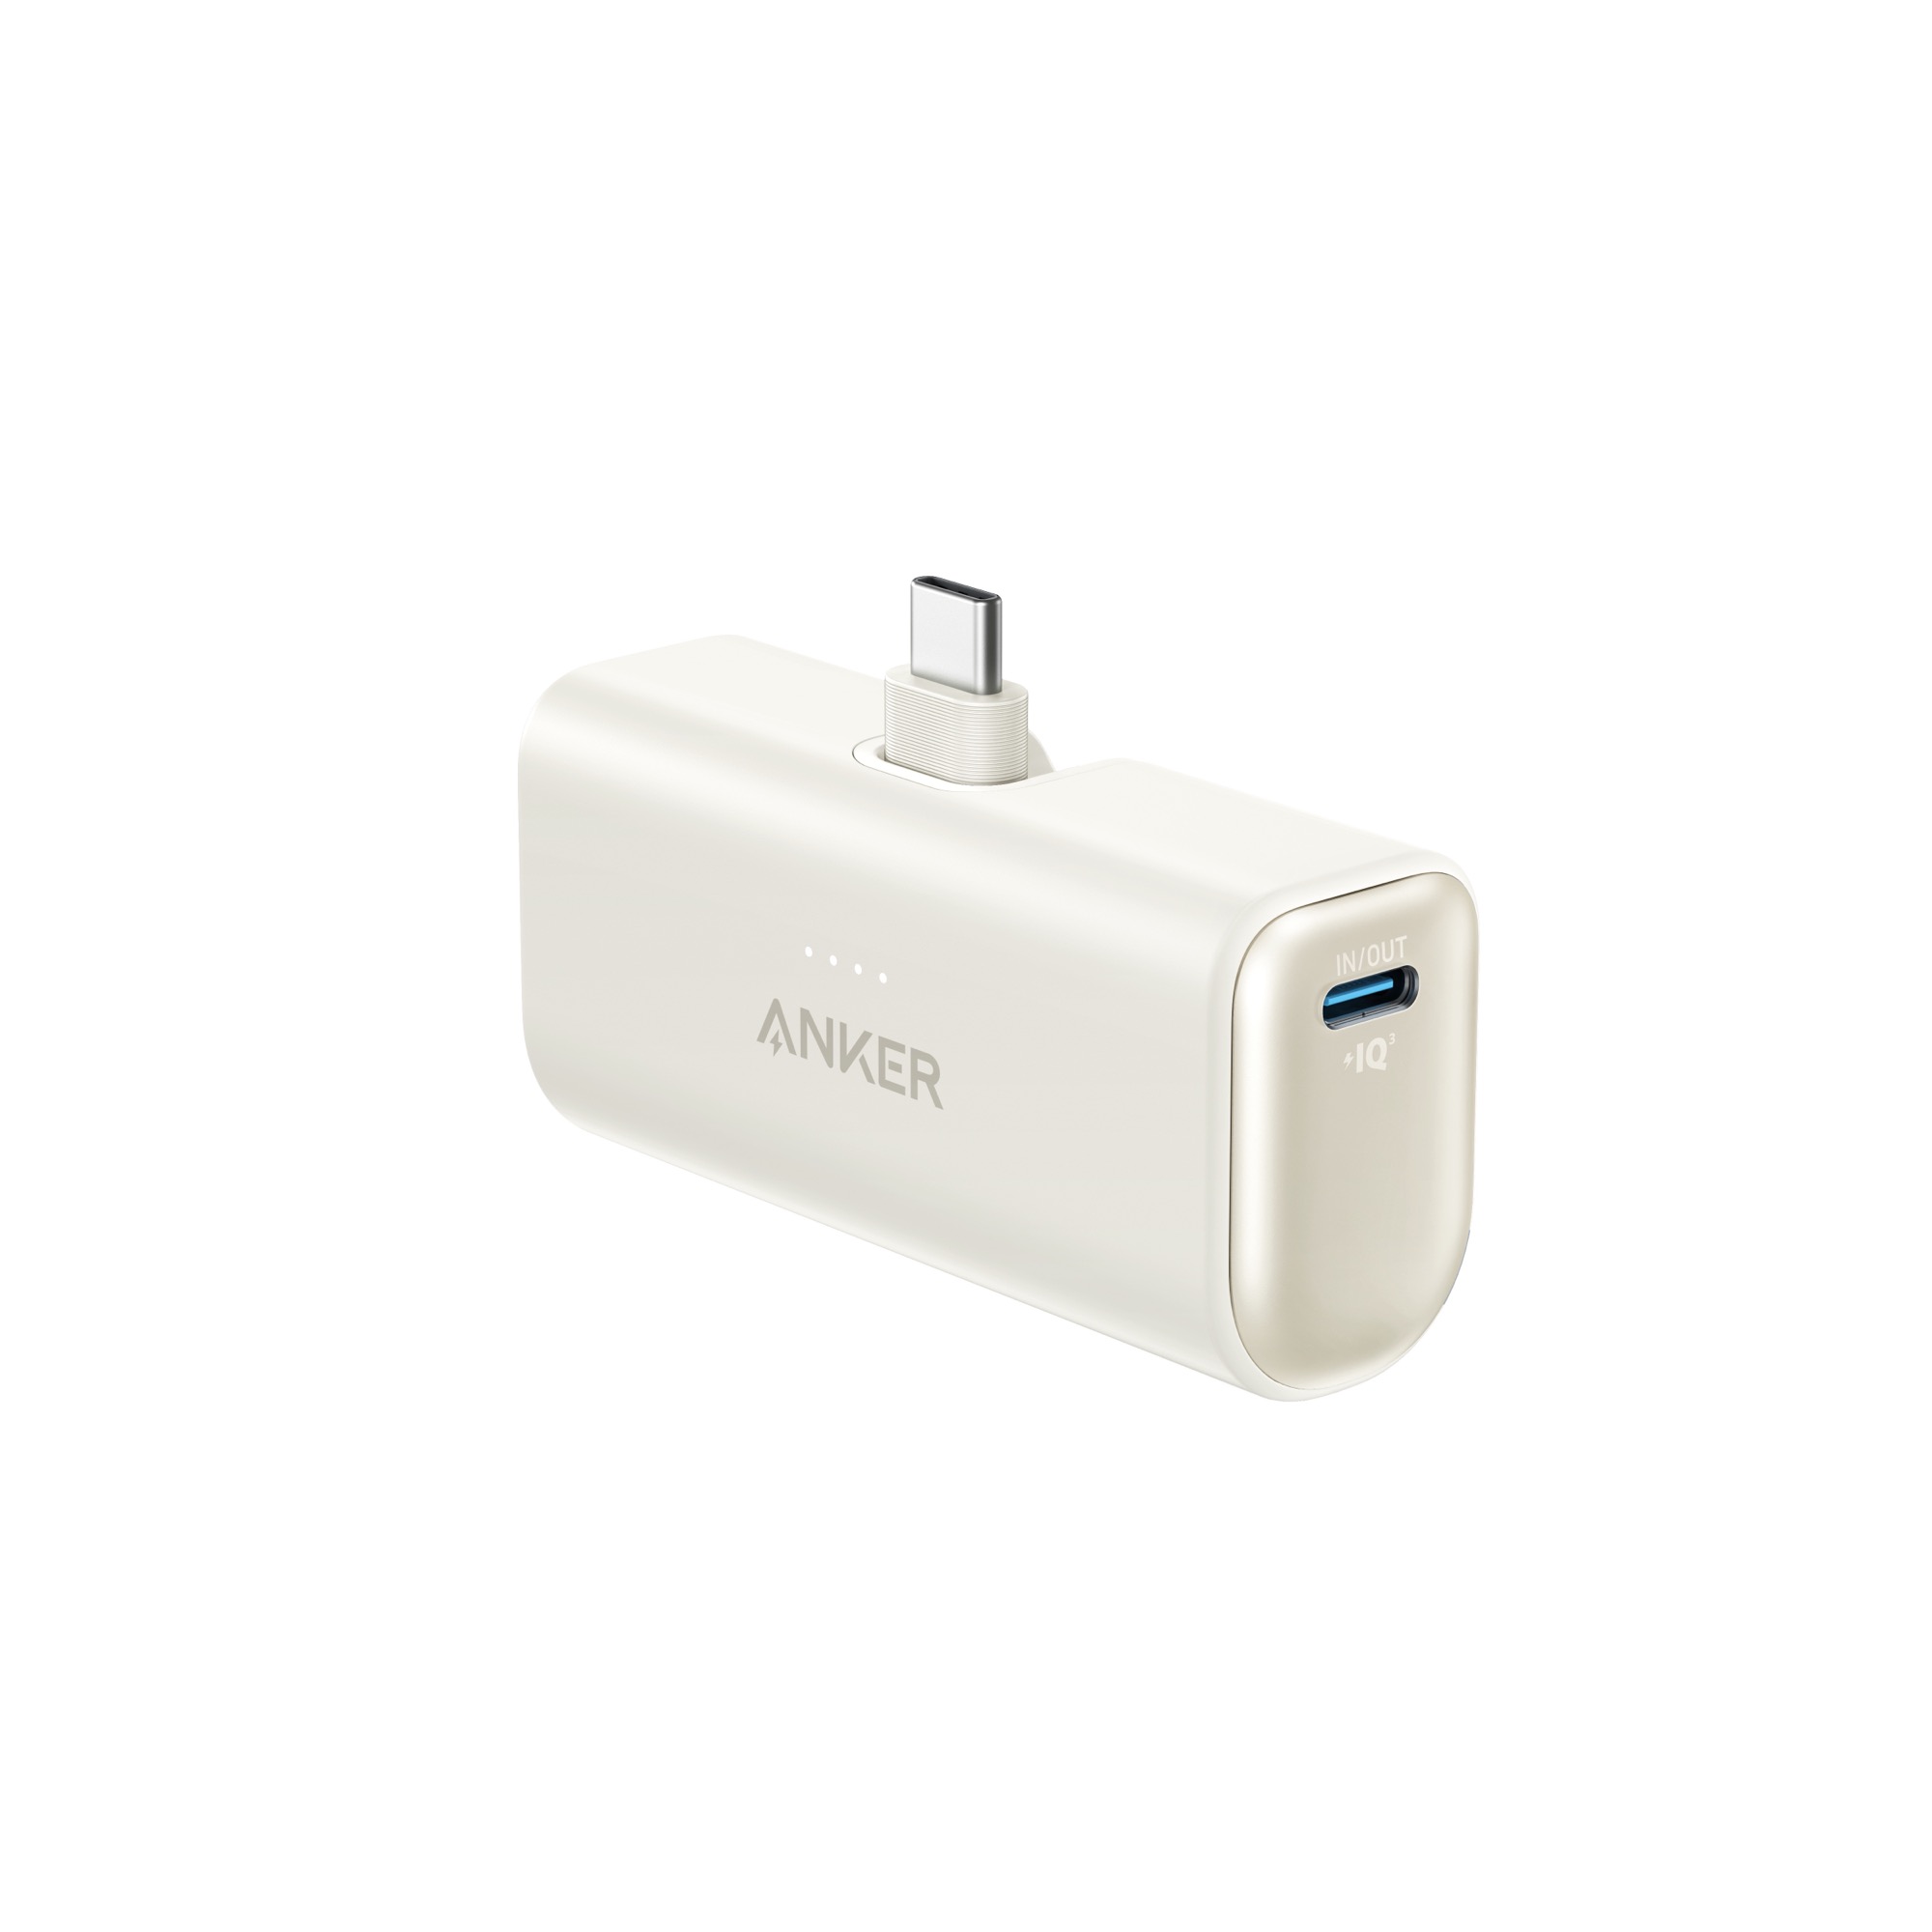 Anker lance une batterie externe capable de charger un MacBook à